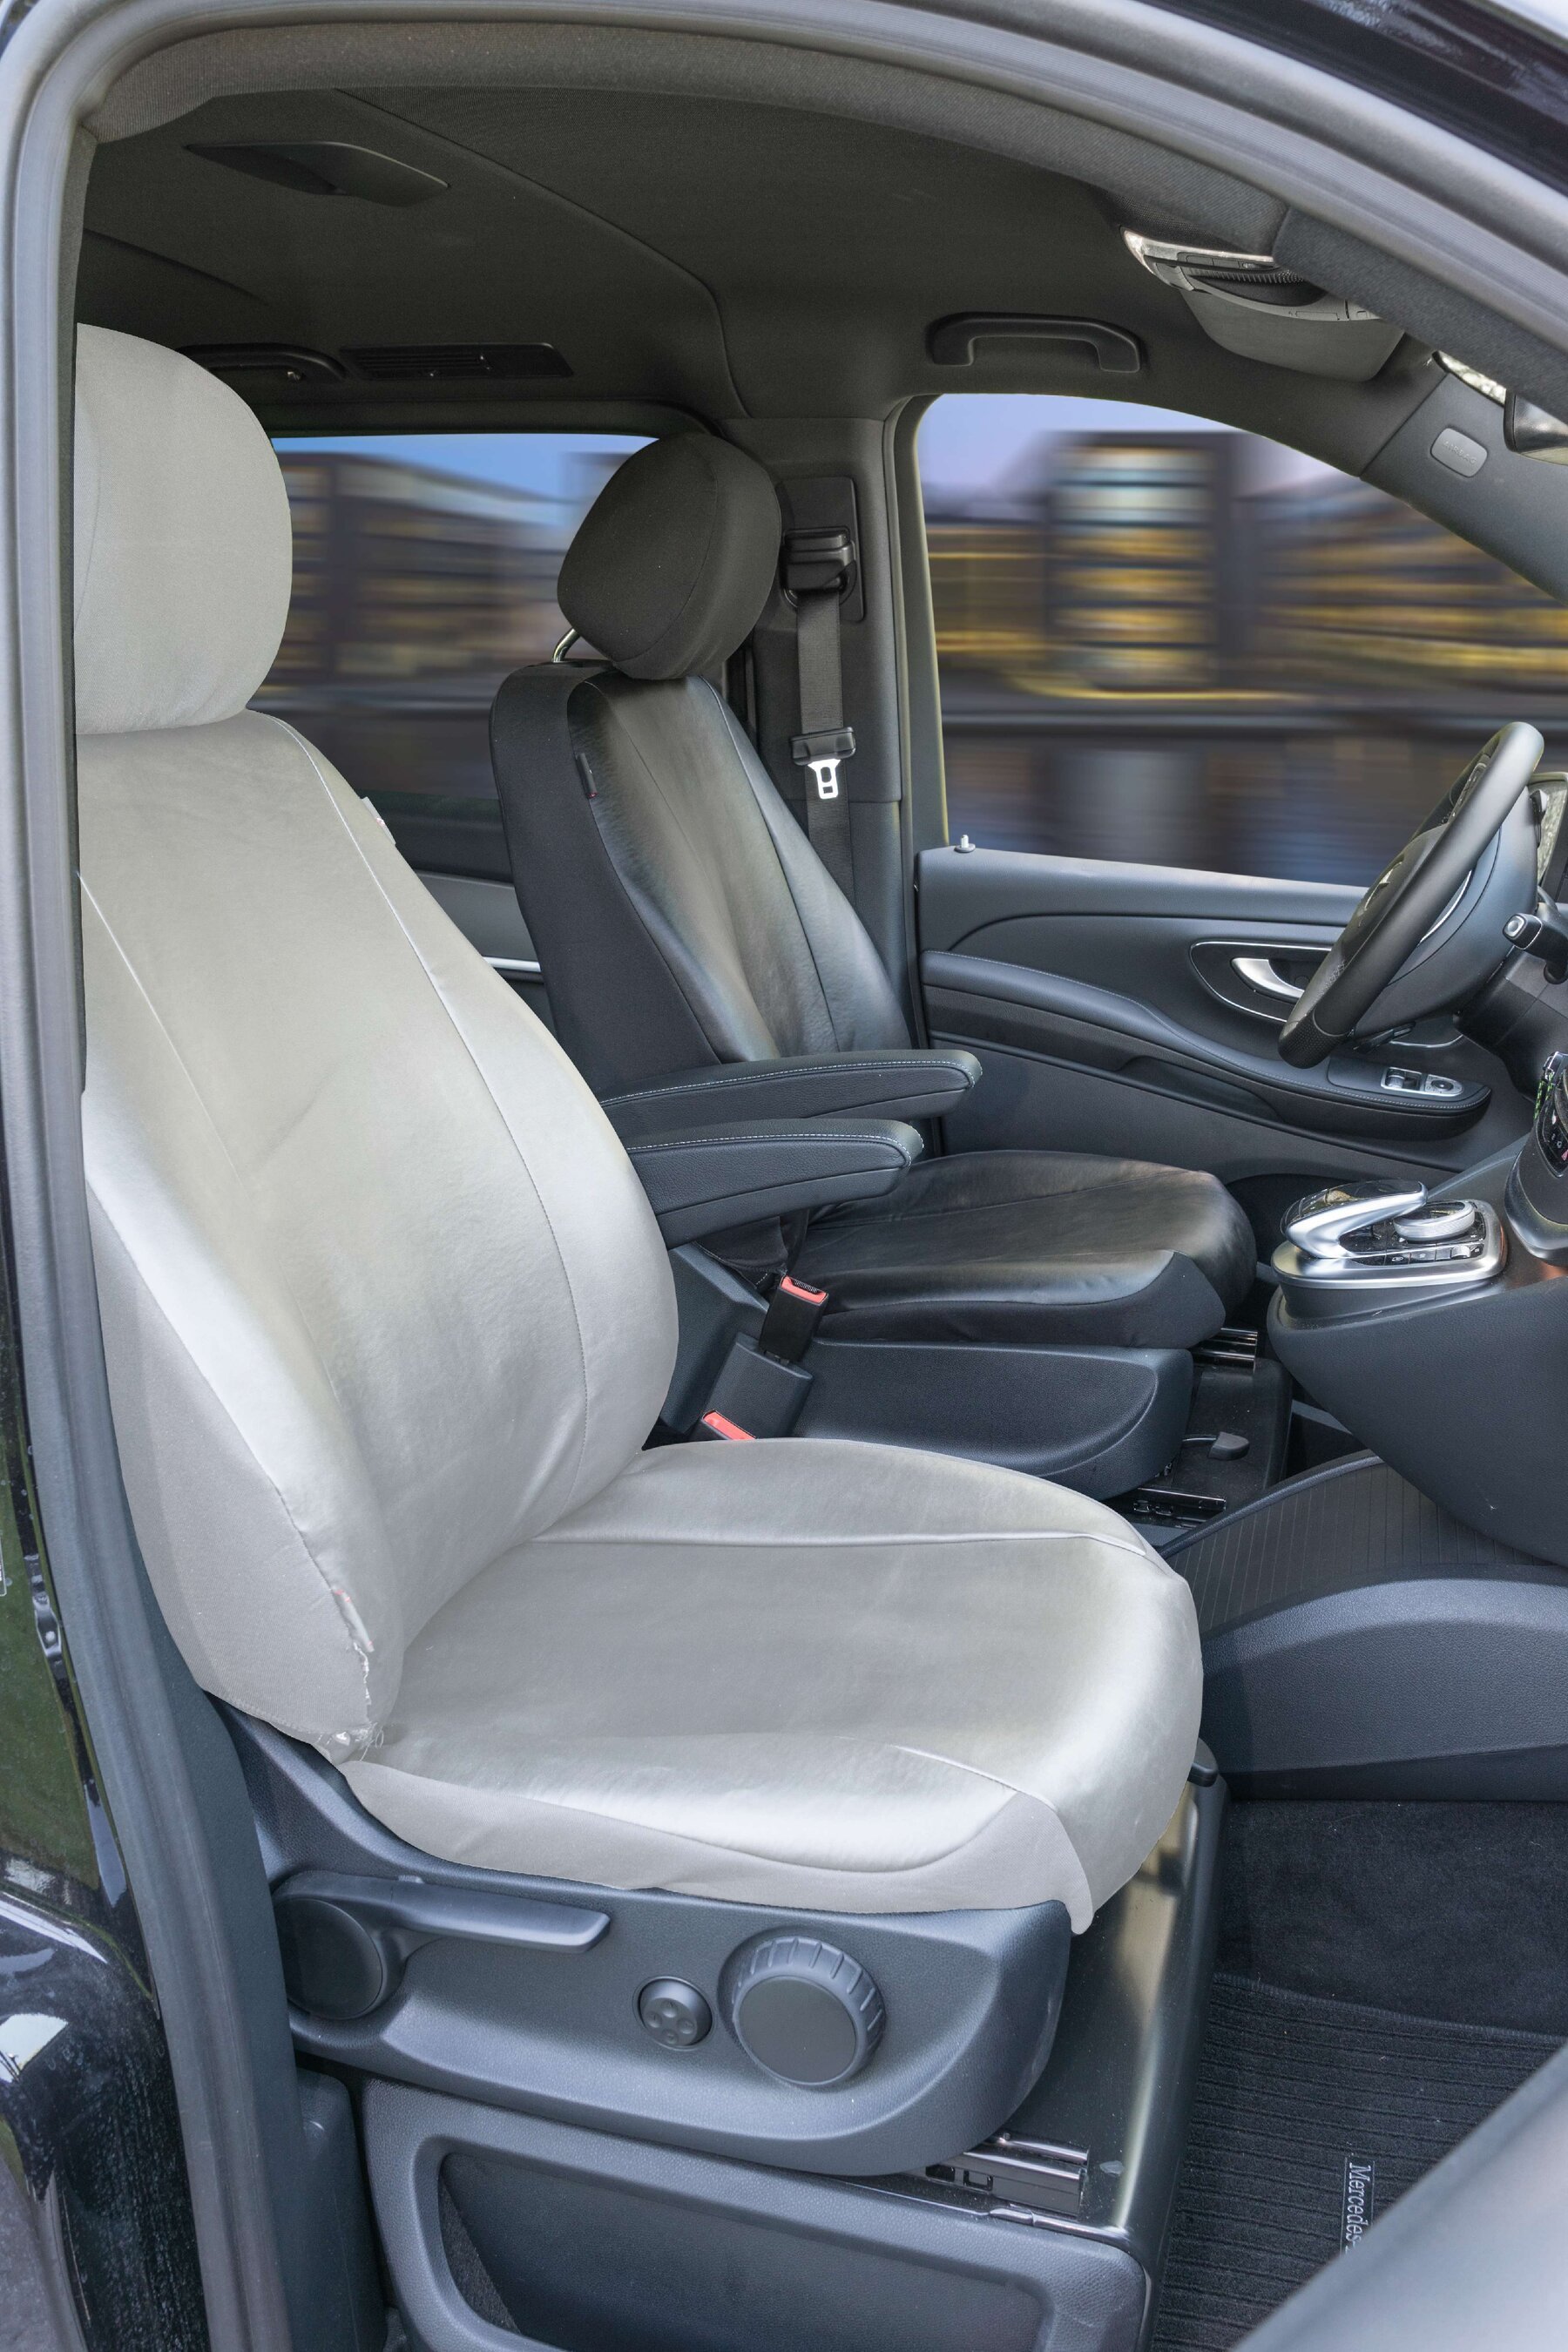 Housse de siège Transporter en simili cuir pour Mercedes-Benz Classe V 447, siège conducteur simple accoudoir intérieur